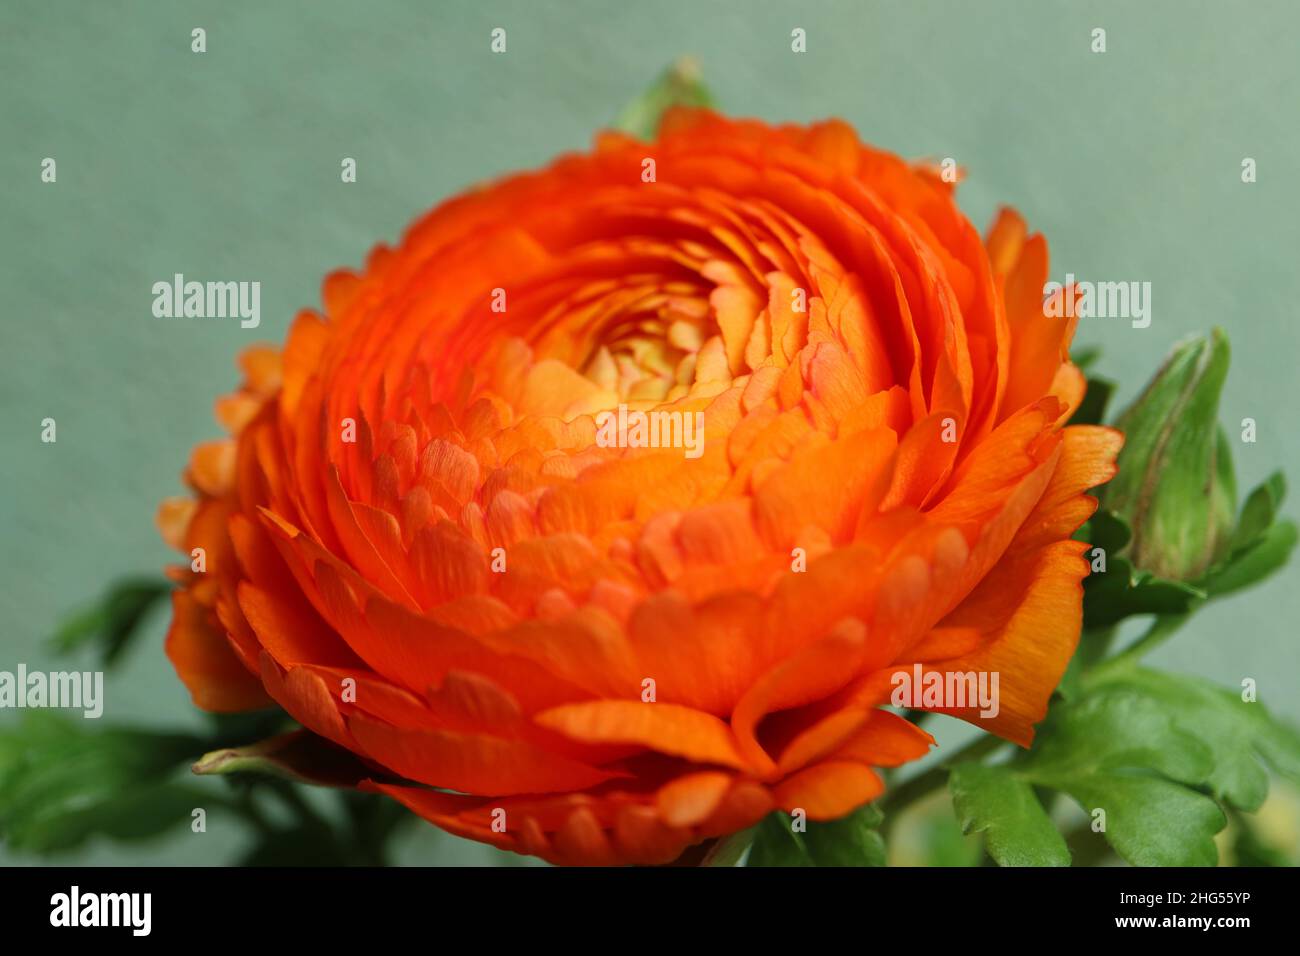 Orange Farbe Ranunculus auf grünem Wandhintergrund, orange Ranunculus mit zarten Blütenblättern und grünen Blättern, blühendes Blütenmakro, Blütenkopf, Stockfoto